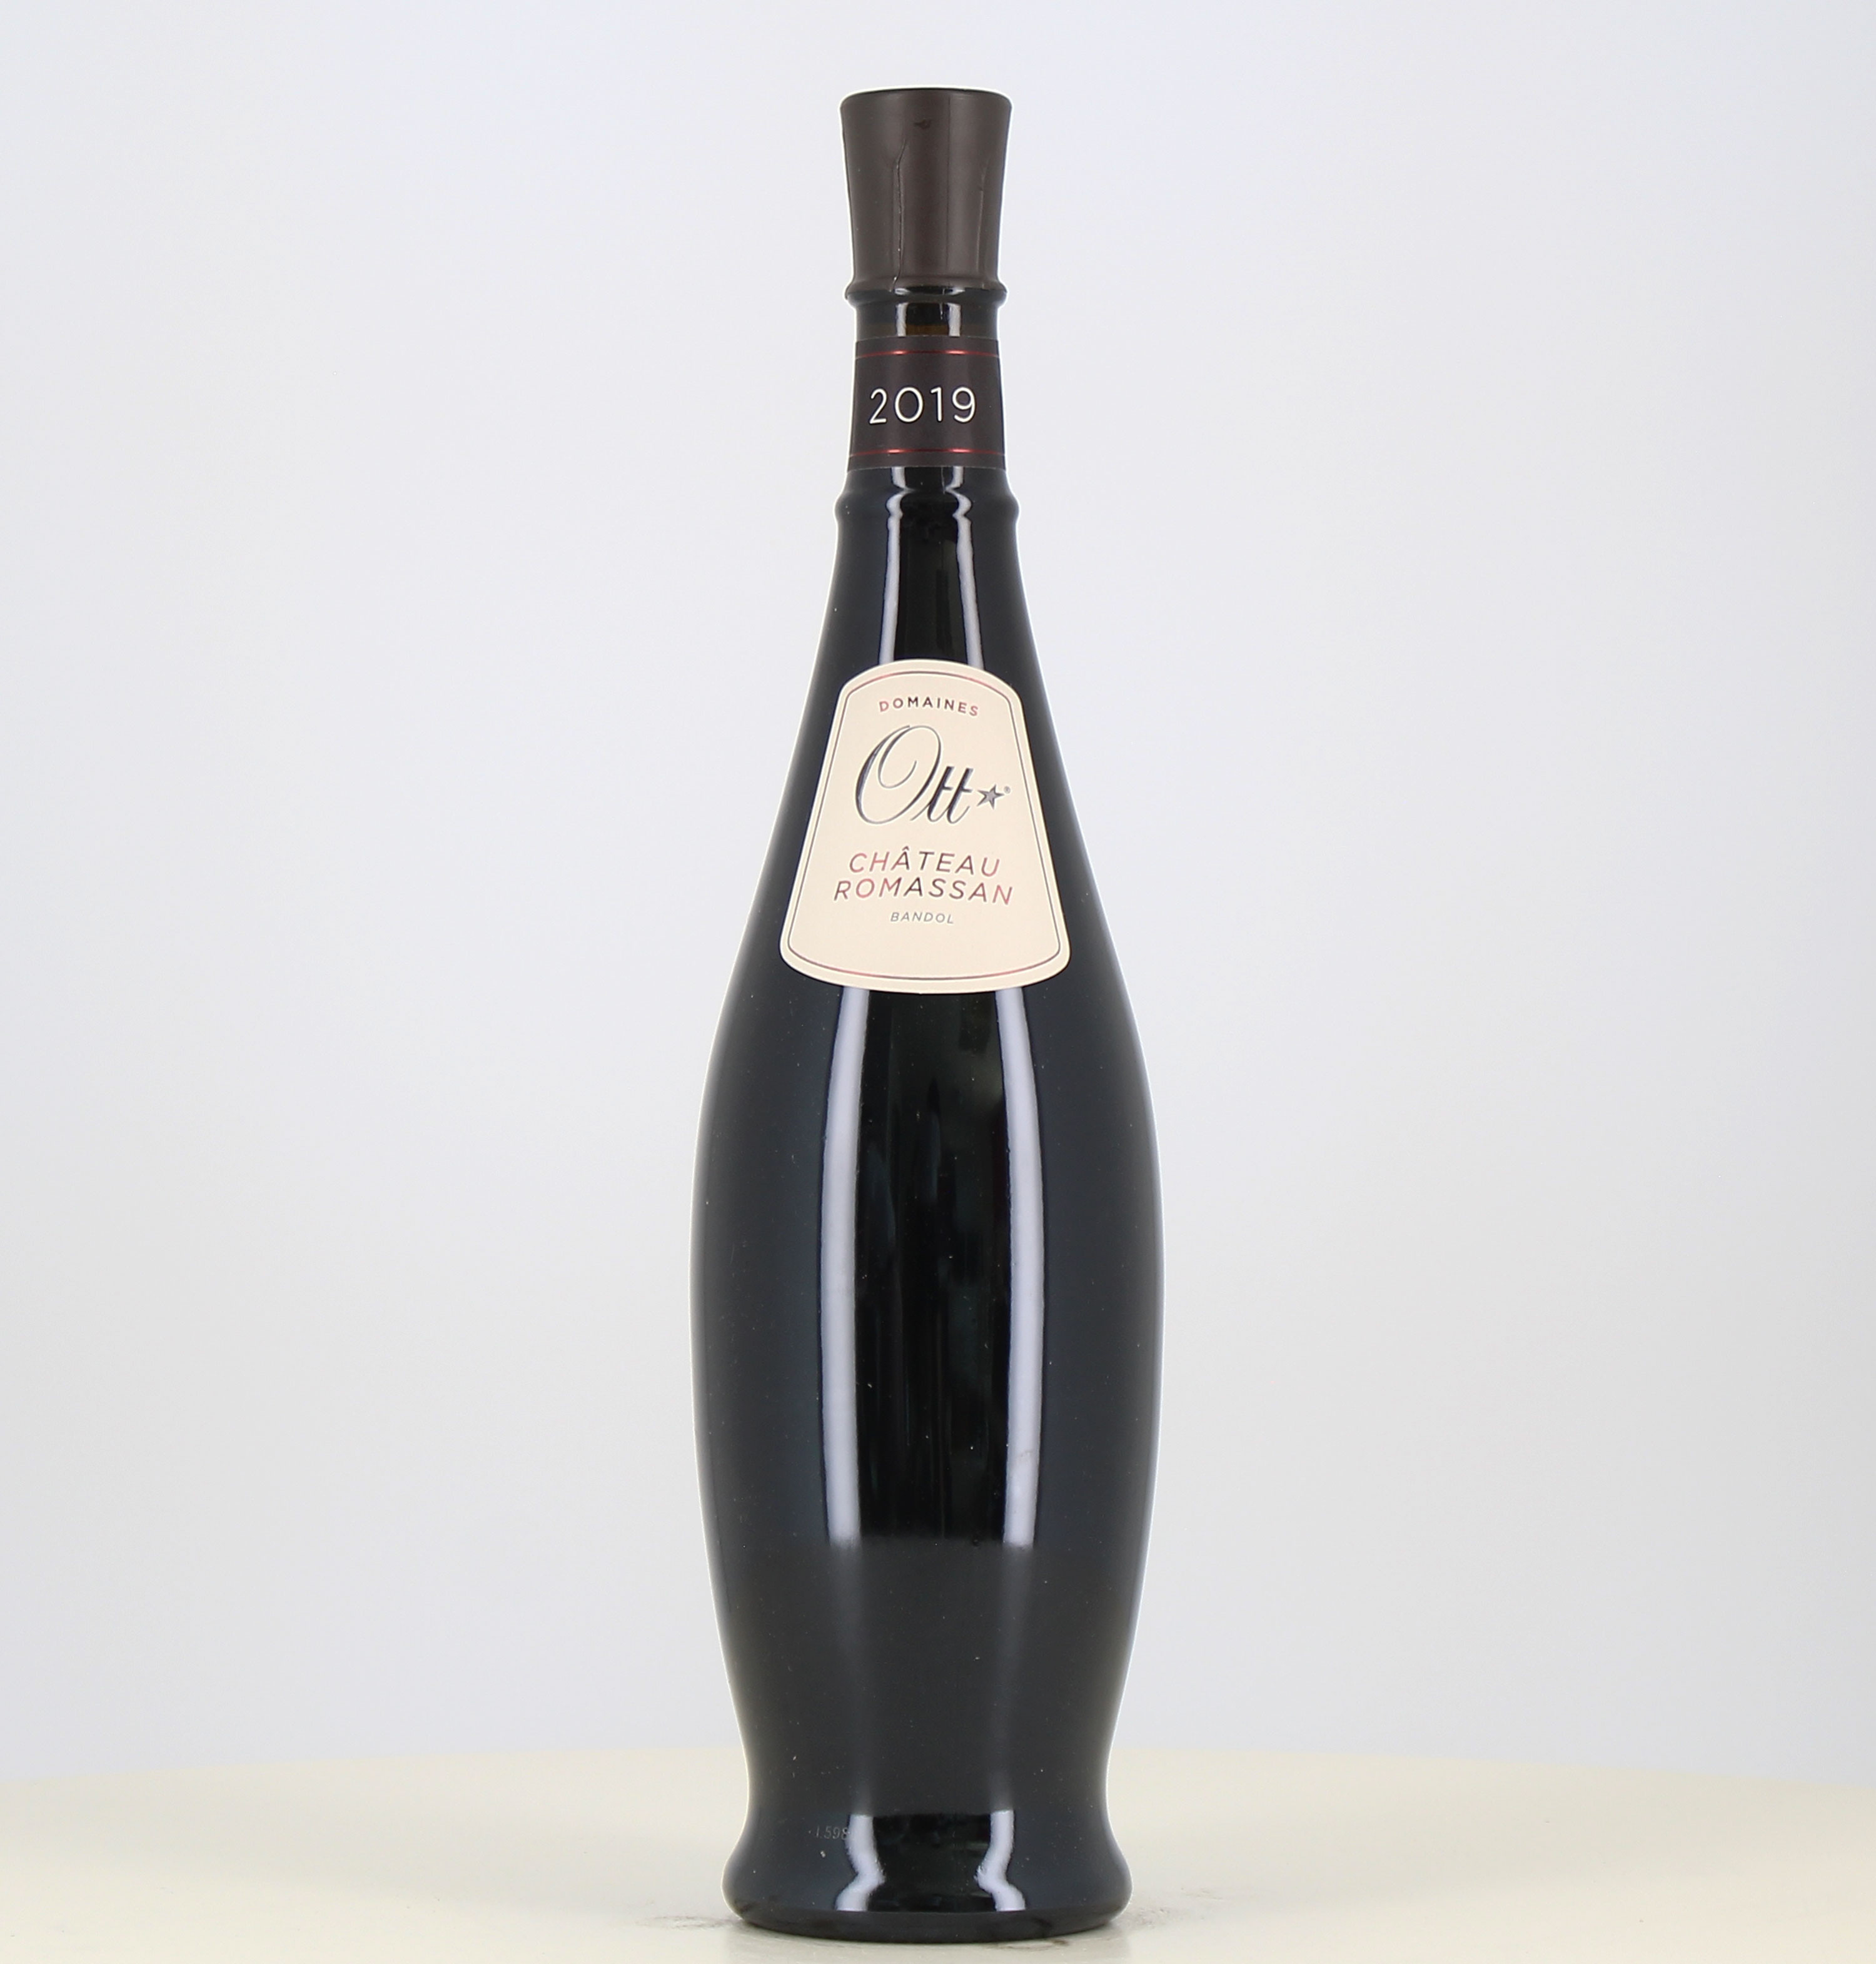 Magnum vin rouge Ott bandol rouge Château Romassan 2019 